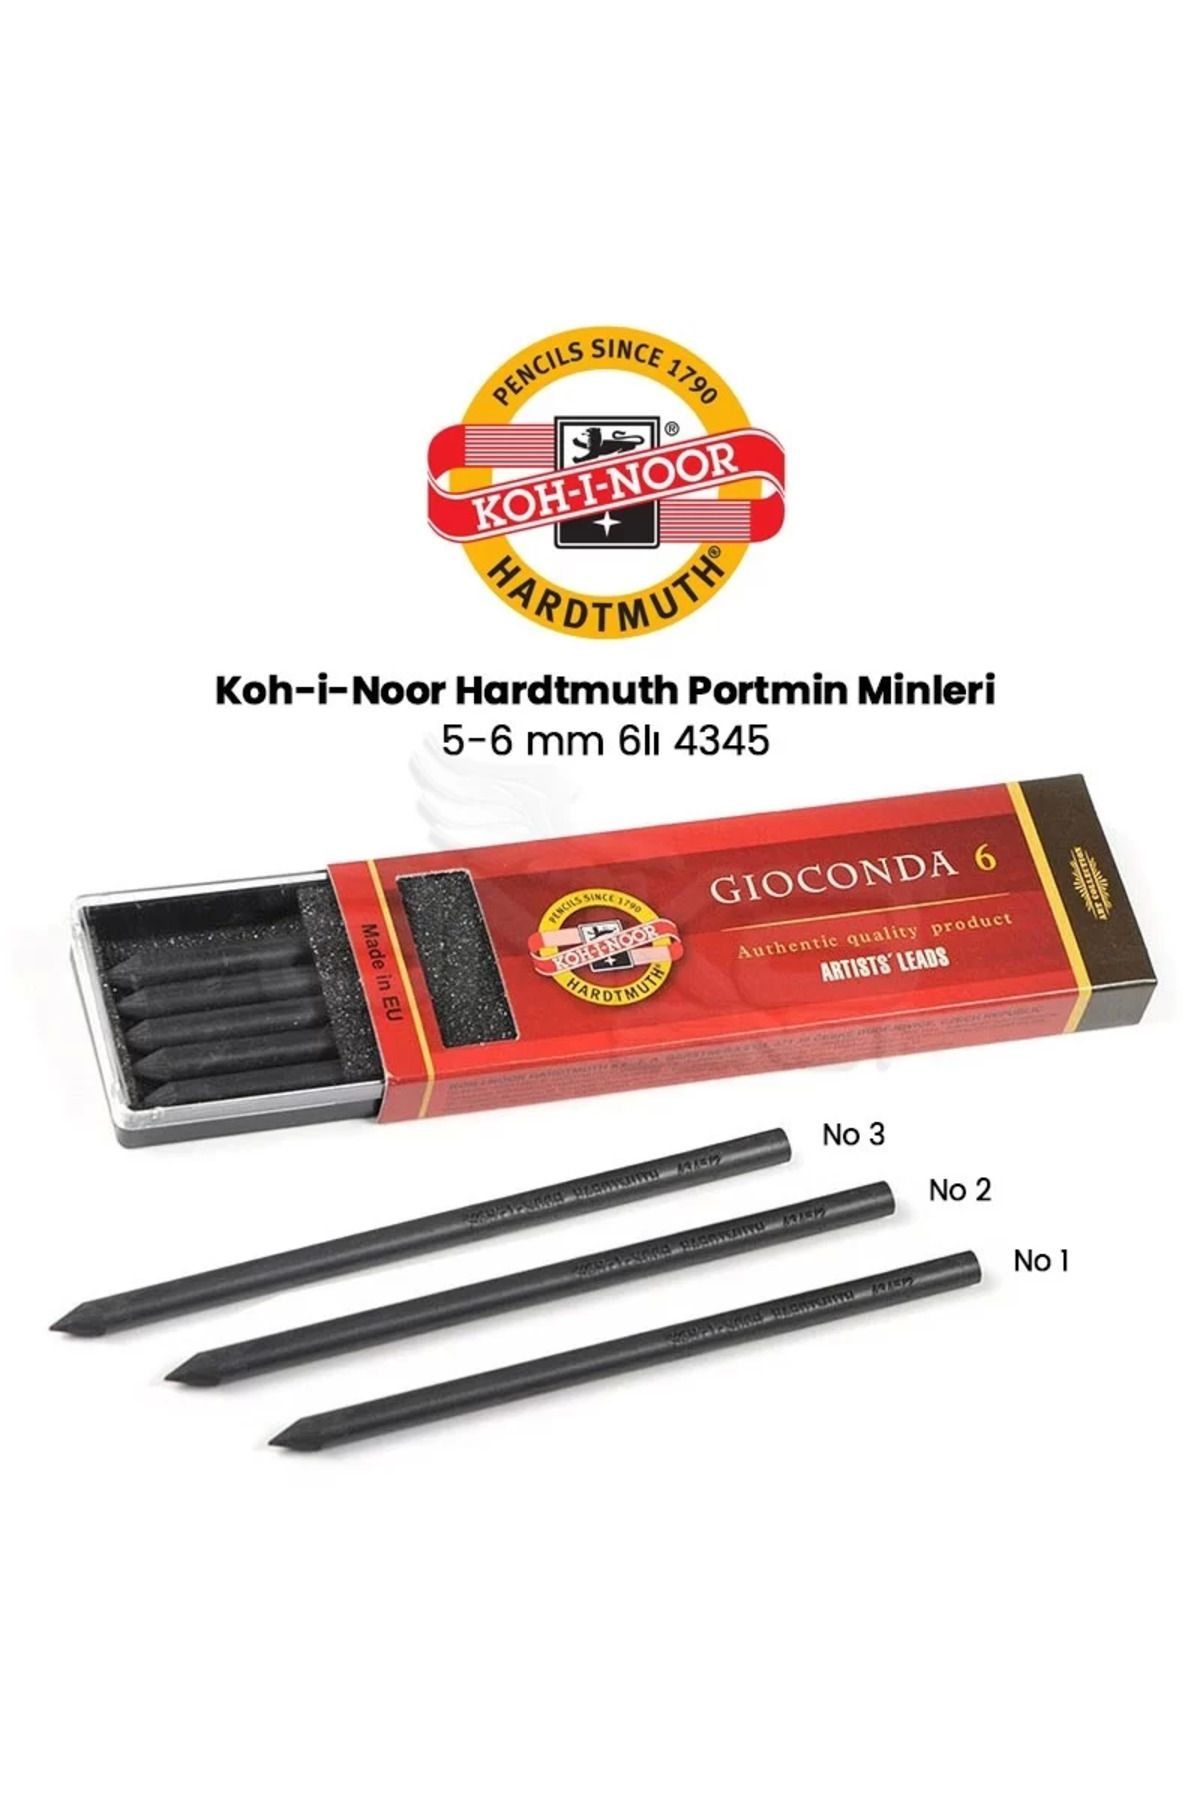 Kohinoor Koh-i-Noor Hardtmuth Portmin Min 5-6 mm 6lı 4345